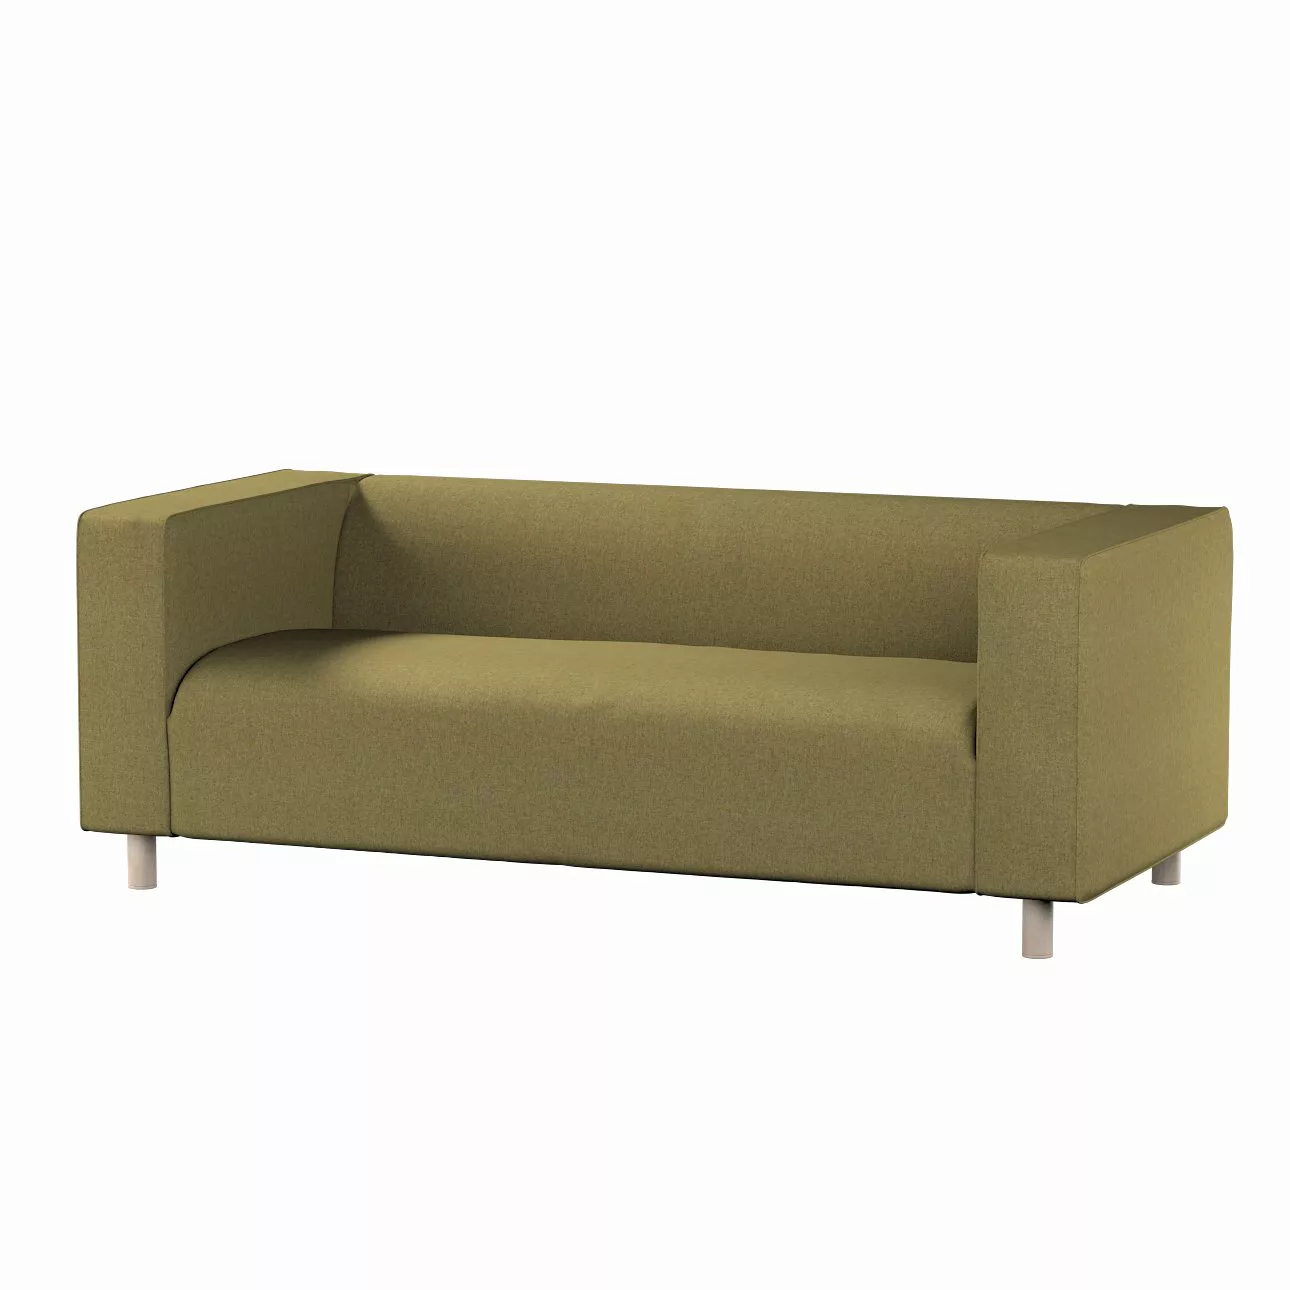 Bezug für Klippan 2-Sitzer Sofa, olivgrün, Sofahusse, Klippan 2-Sitzer, Mad günstig online kaufen